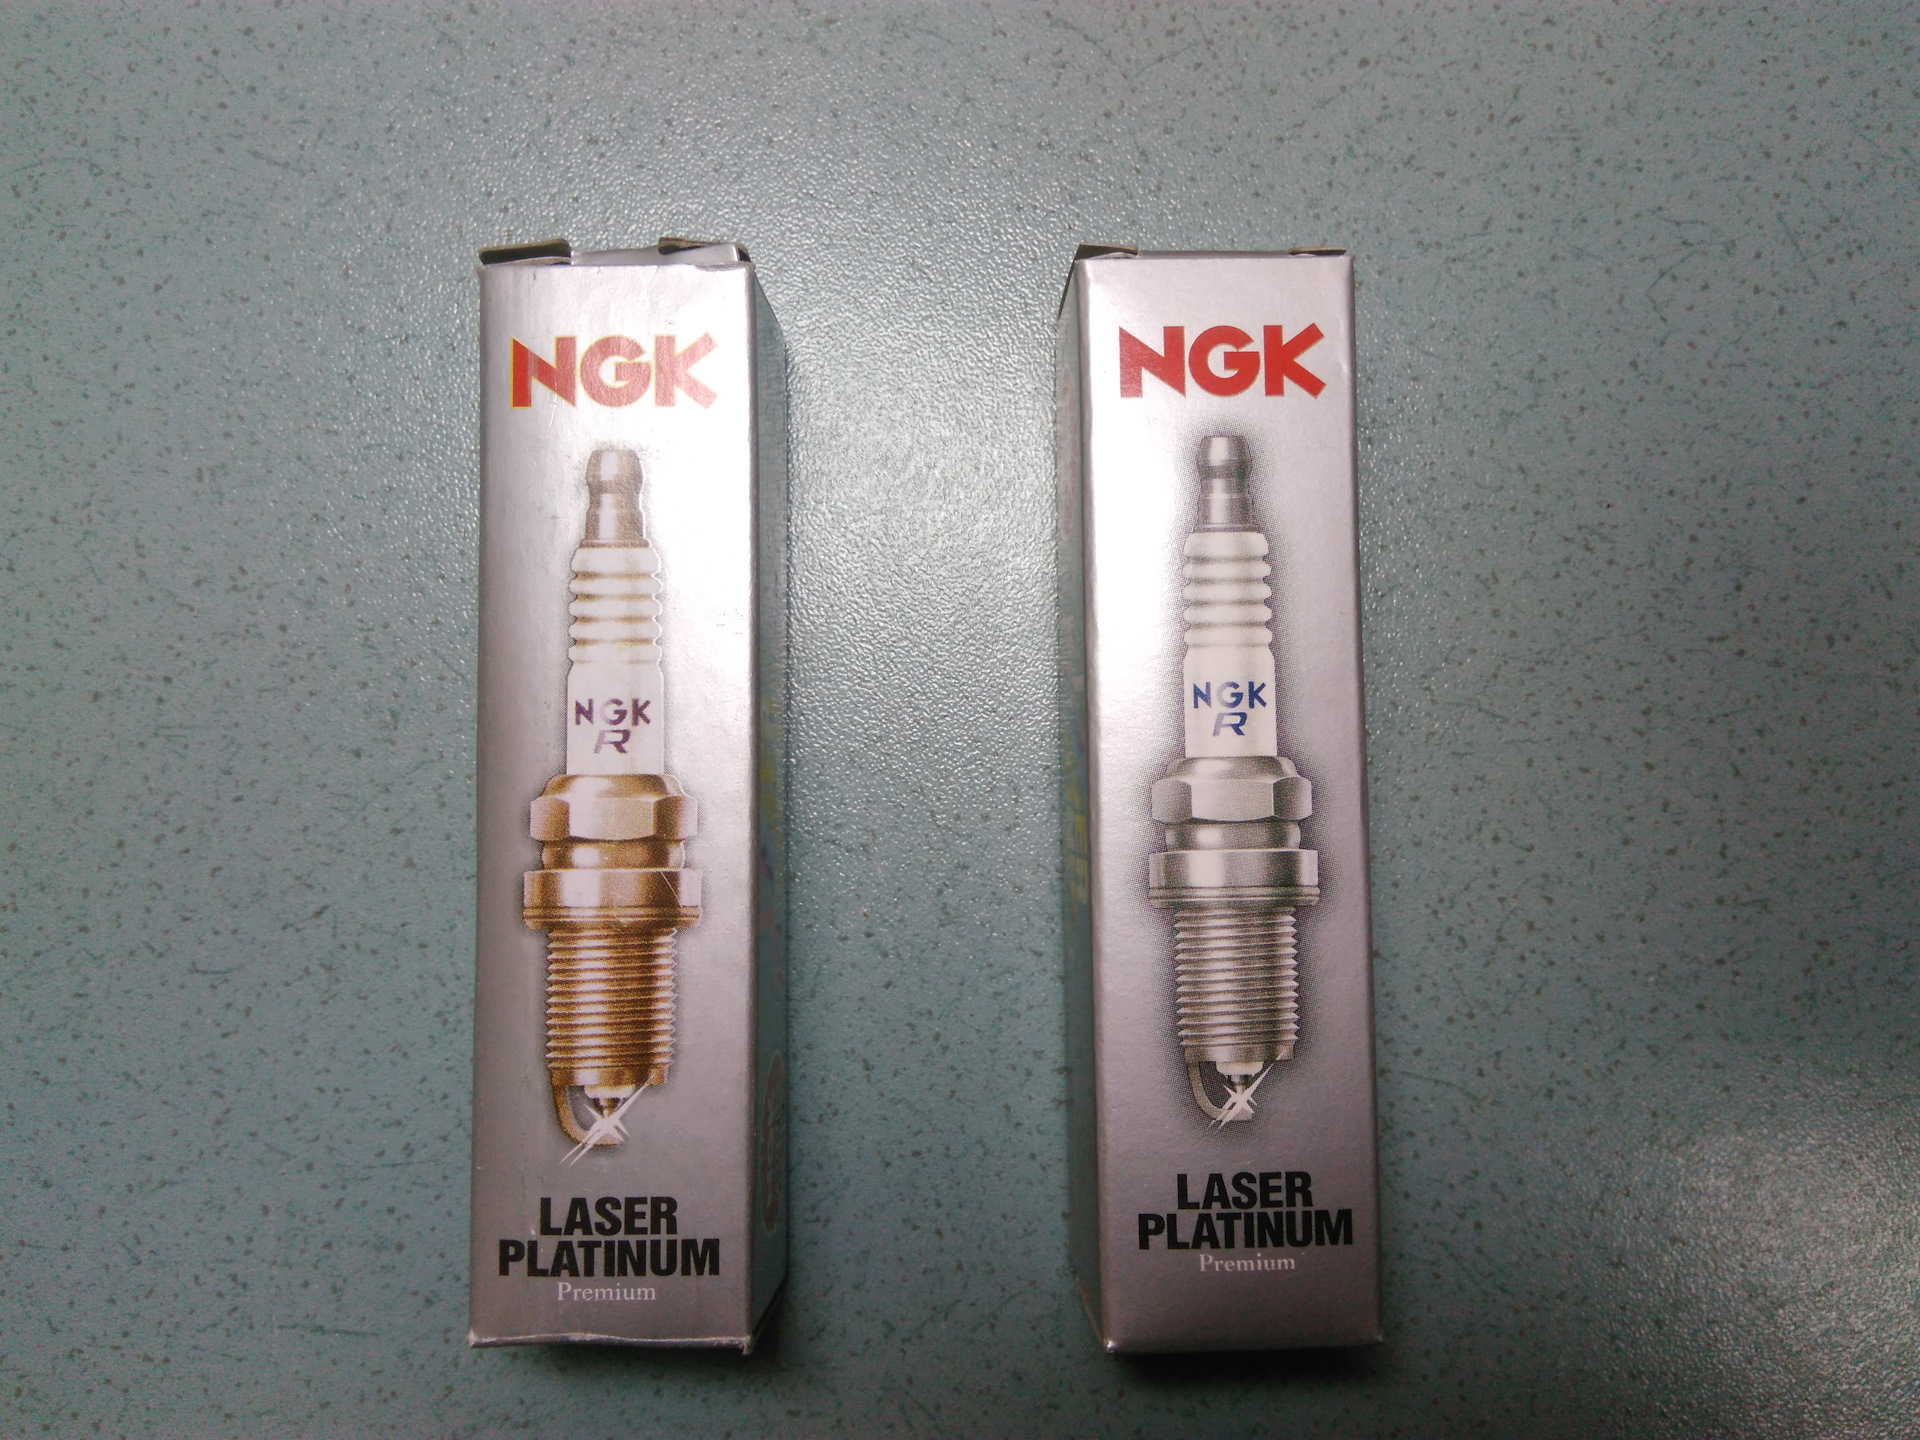 Ngk как отличить. NGK 95463 свеча зажигания. NGK svecha podelka Orginal. Оригинальные свечи NGK 22401-ed816. NGK Laser Platinum свечи оригинал.